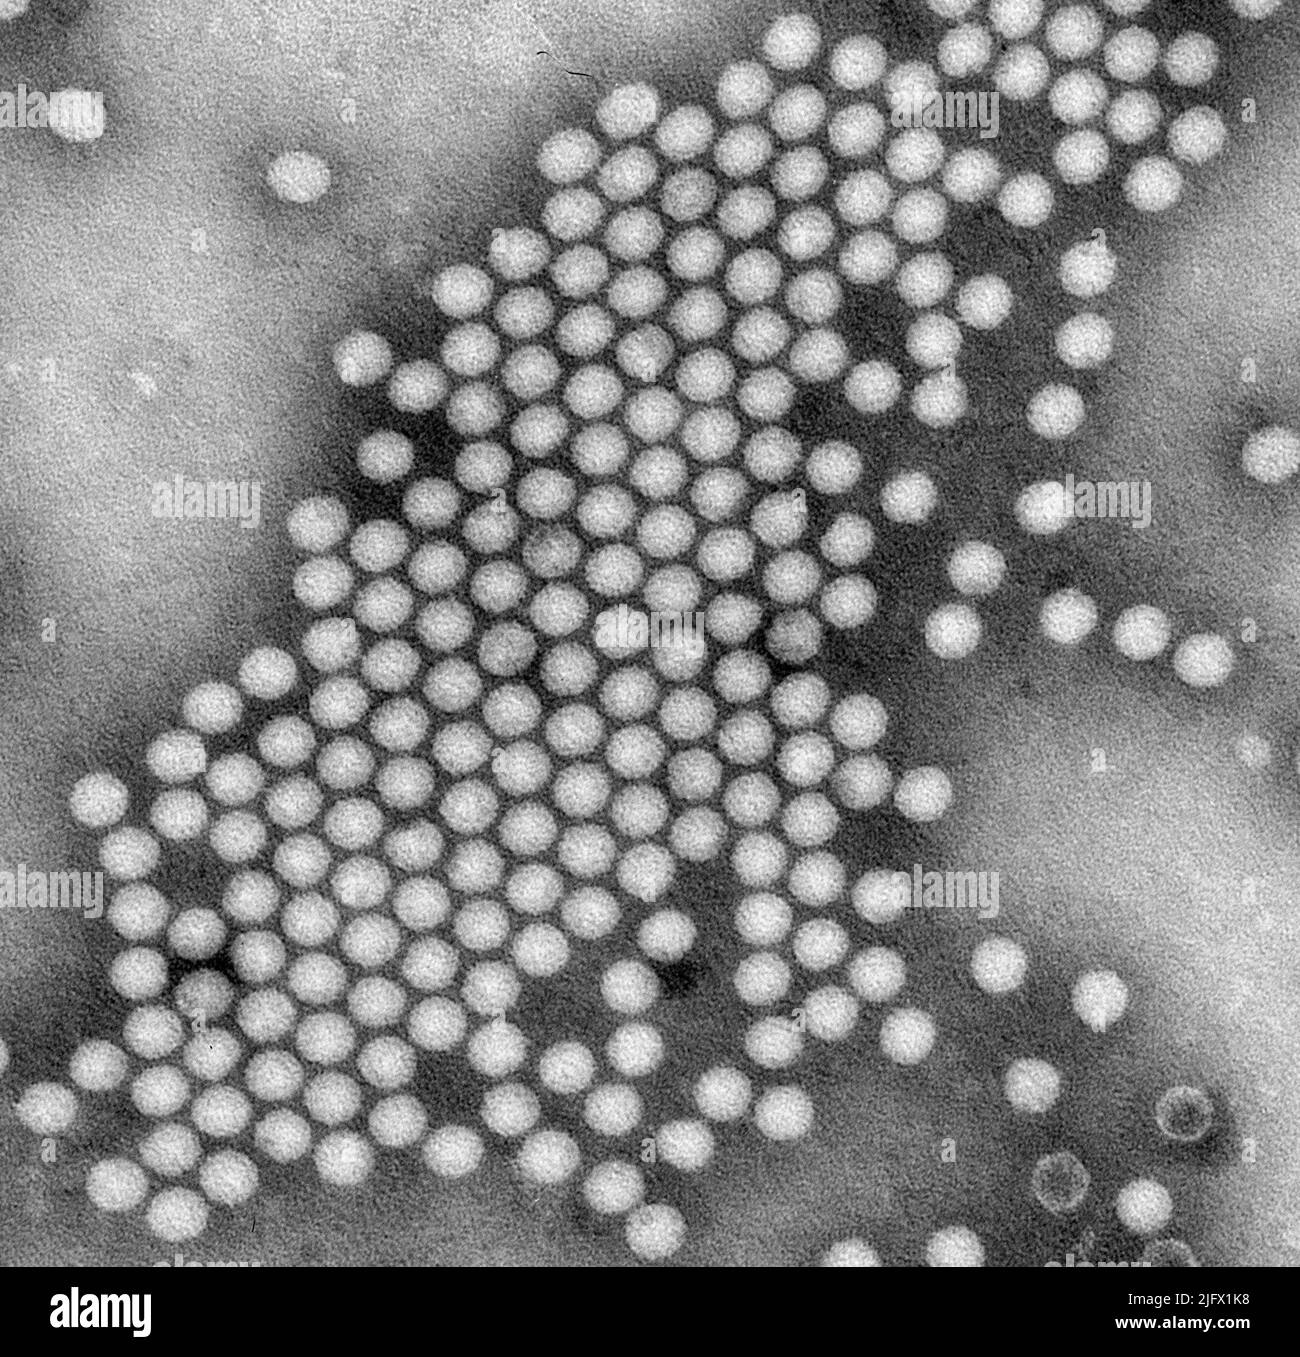 Questo microscopio elettronico a trasmissione (TEM), immagine di colorazione negativa, rivela alcune delle caratteristiche ultrostrutturali esibite da un raggruppamento di particelle di virus della poliomielite a forma di icosaedro. Una versione ottimizzata e migliorata di un'immagine prodotta dai Centri statunitensi per il controllo e la prevenzione delle malattie / credito CDC / J.J..Esposito; F.A.Murphy Foto Stock